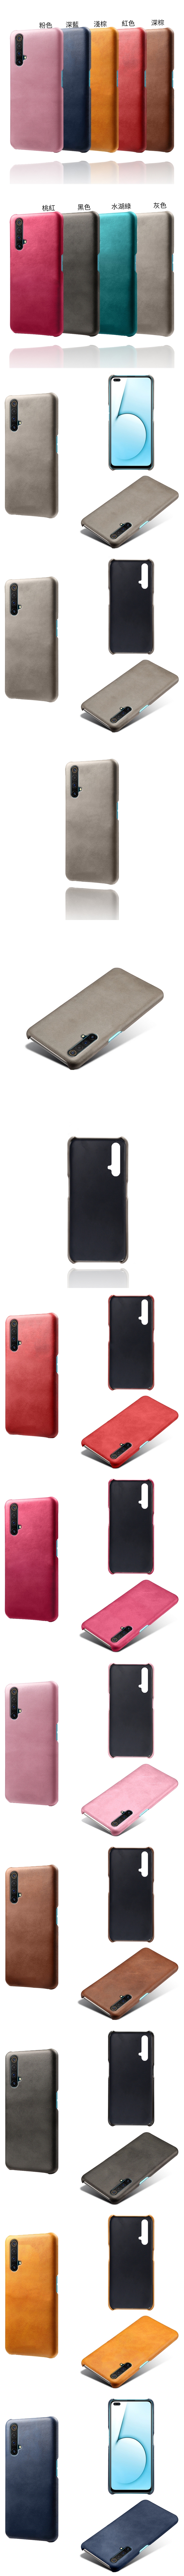 Realme X50 5G X3 皮革保護殼(PLAIN) - 牛皮仿真皮紋單色背蓋素色多色手機殼保護套手機套